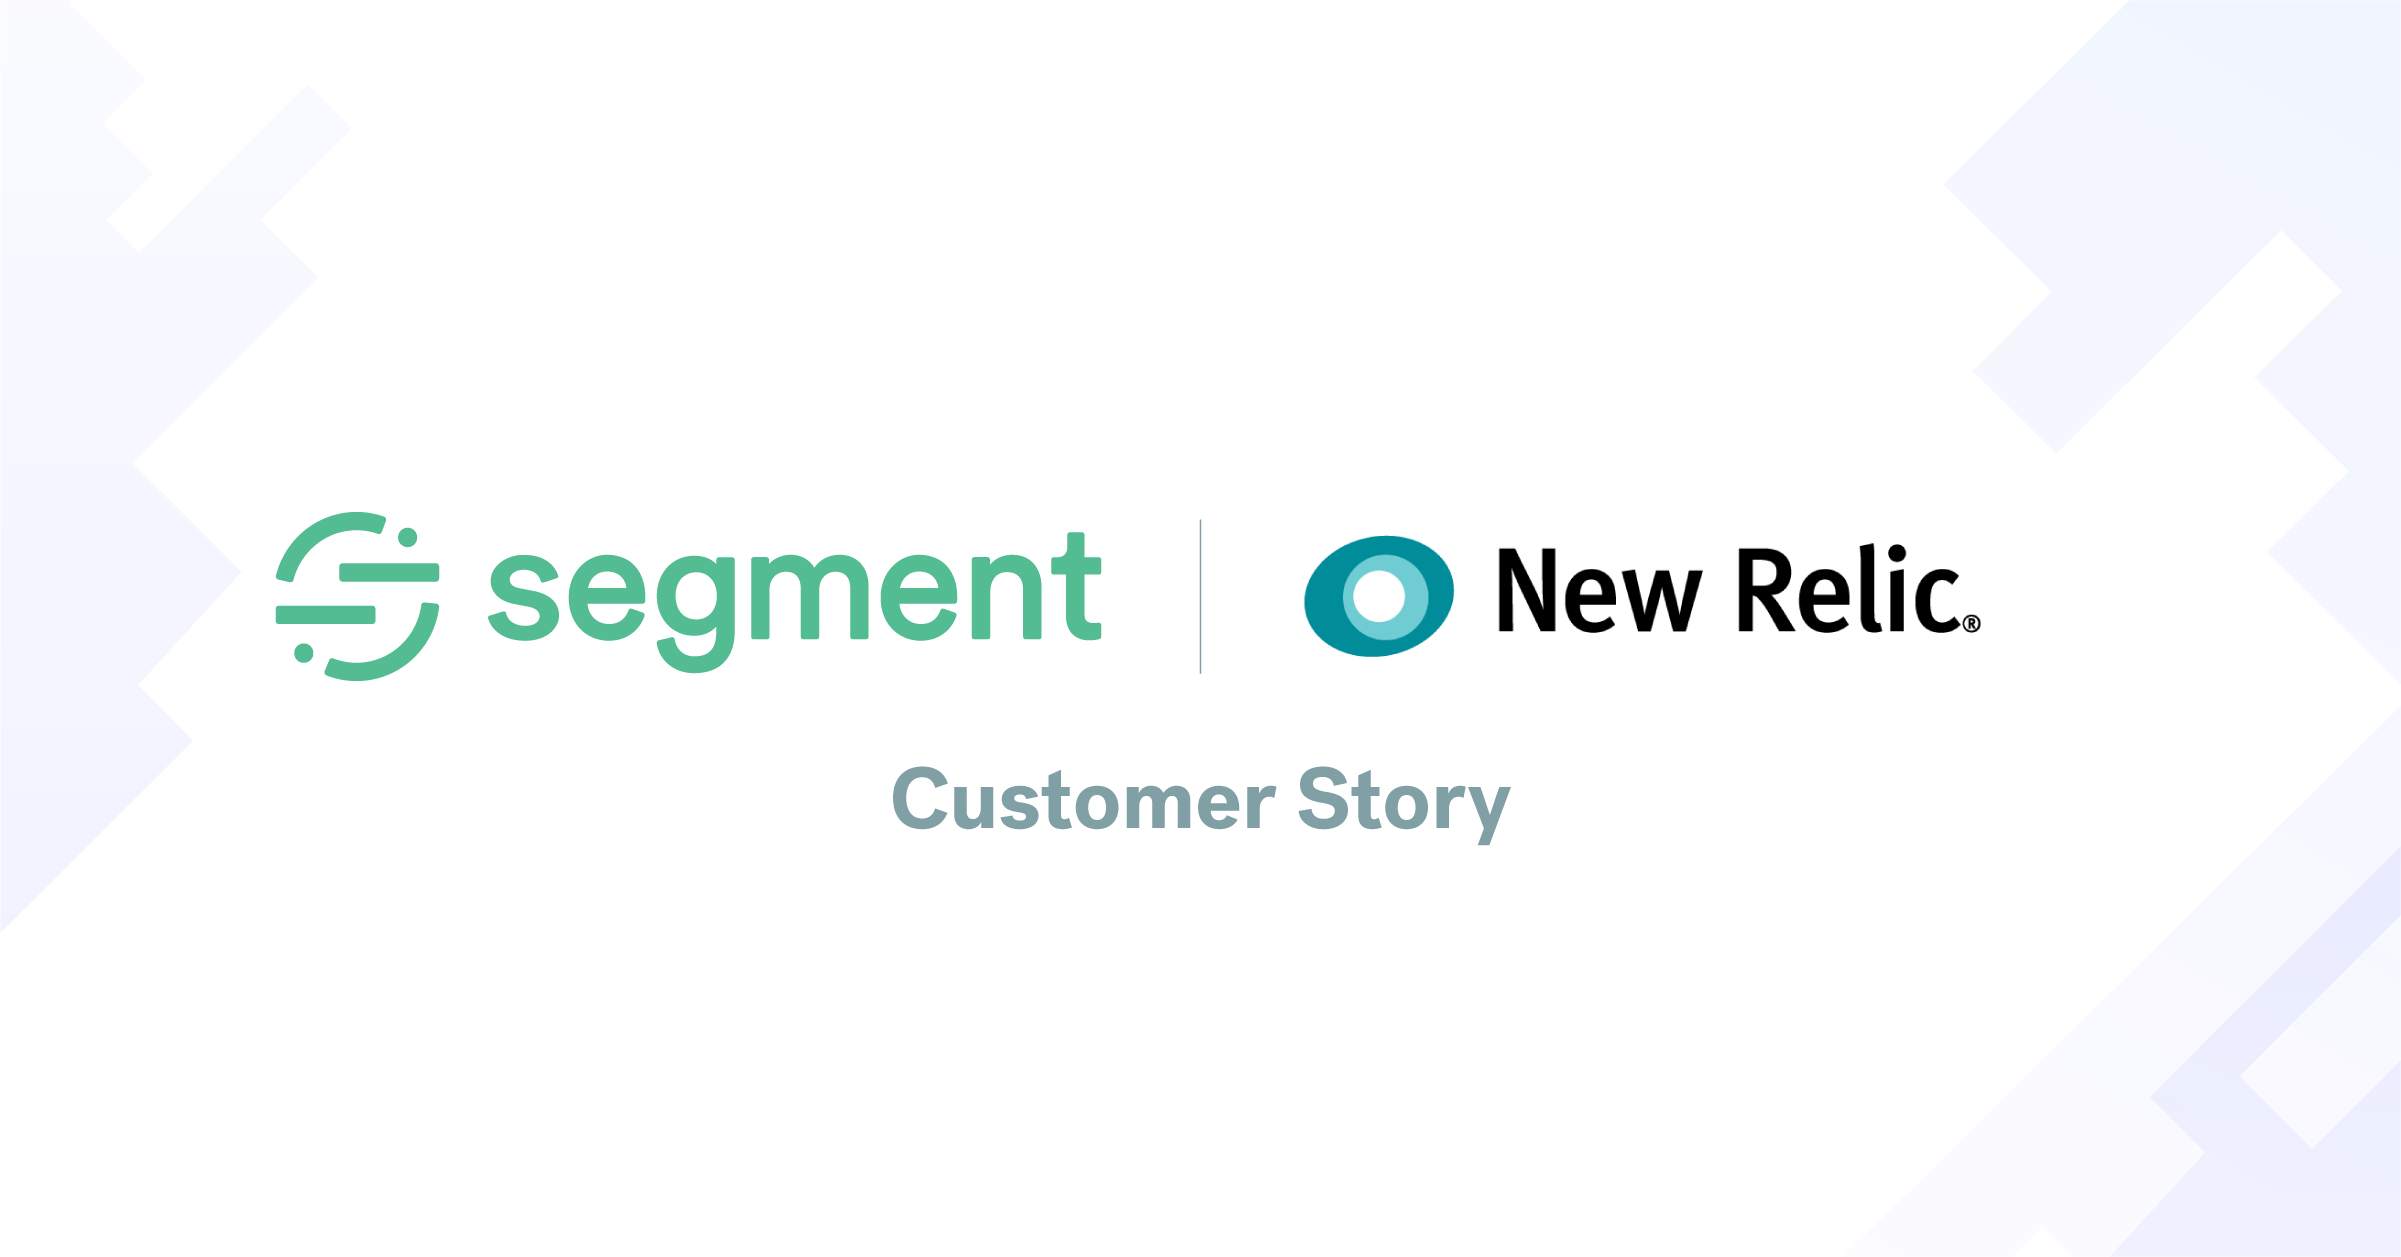 New Relic使用Segment作为其增长型营销技术的核心